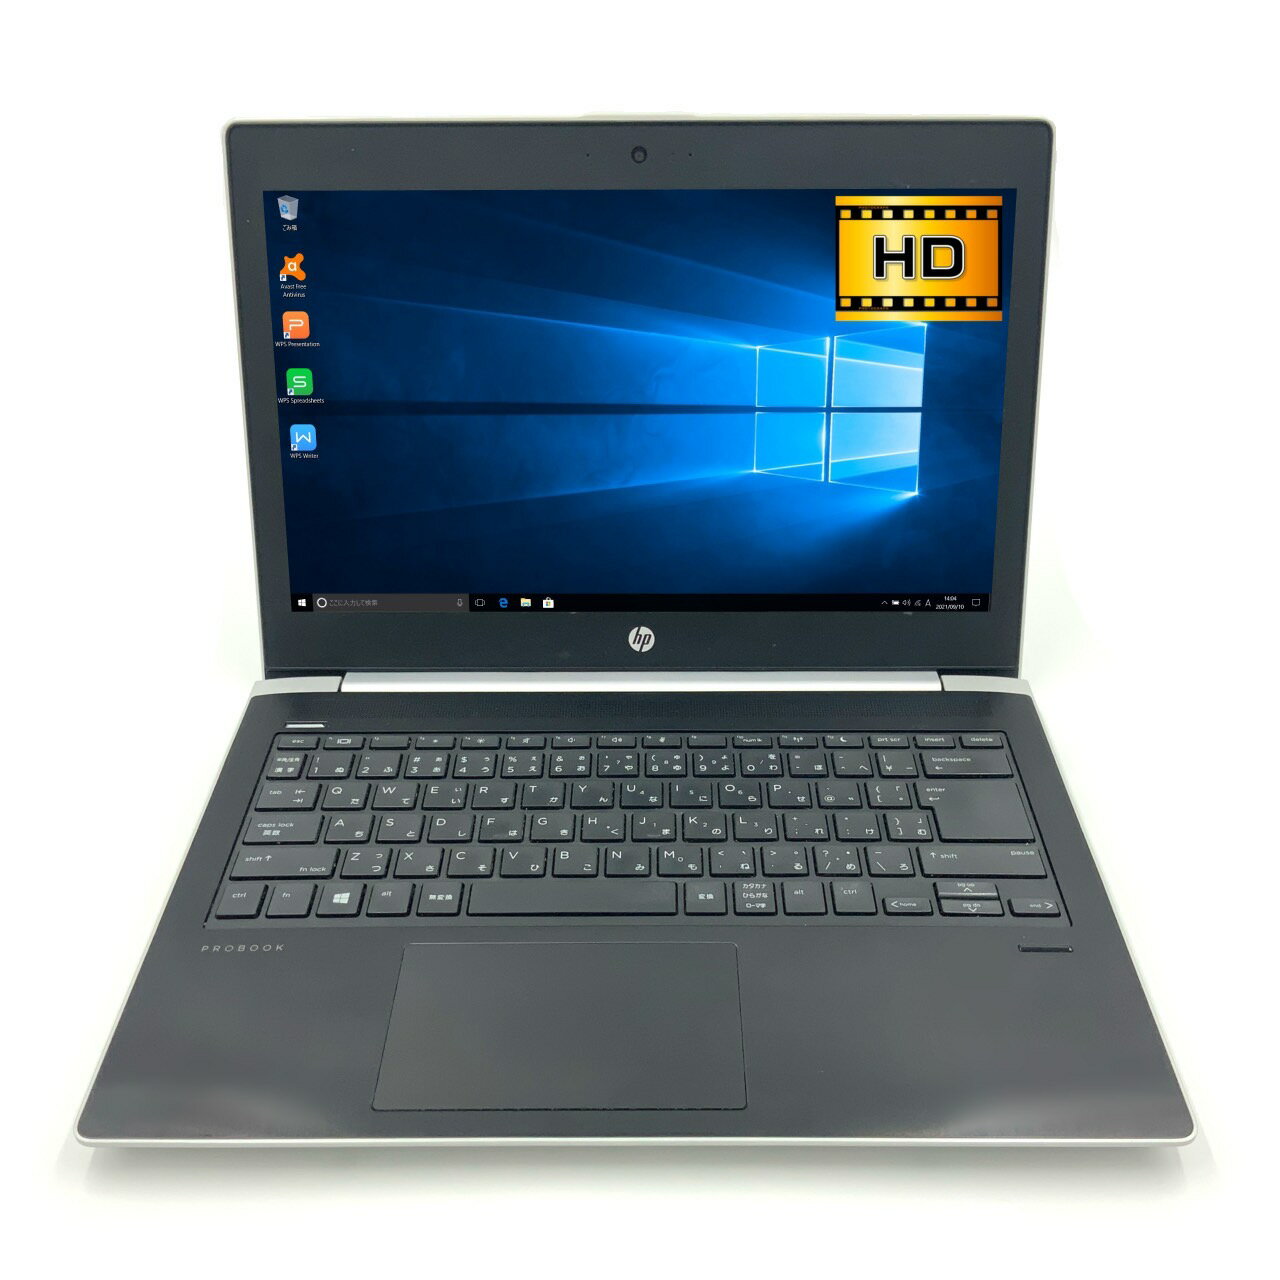 【モバイル】【超軽量】 HP ProBook 430 G5 第7世代 Core i3 7020U/2.30GHz 4GB SSD120GB M.2 Windows10 64bit WPSOffice 13.3インチ HD カメラ 無線LAN 中古パソコン ノートパソコン モバイルノート PC Notebook 【中古】